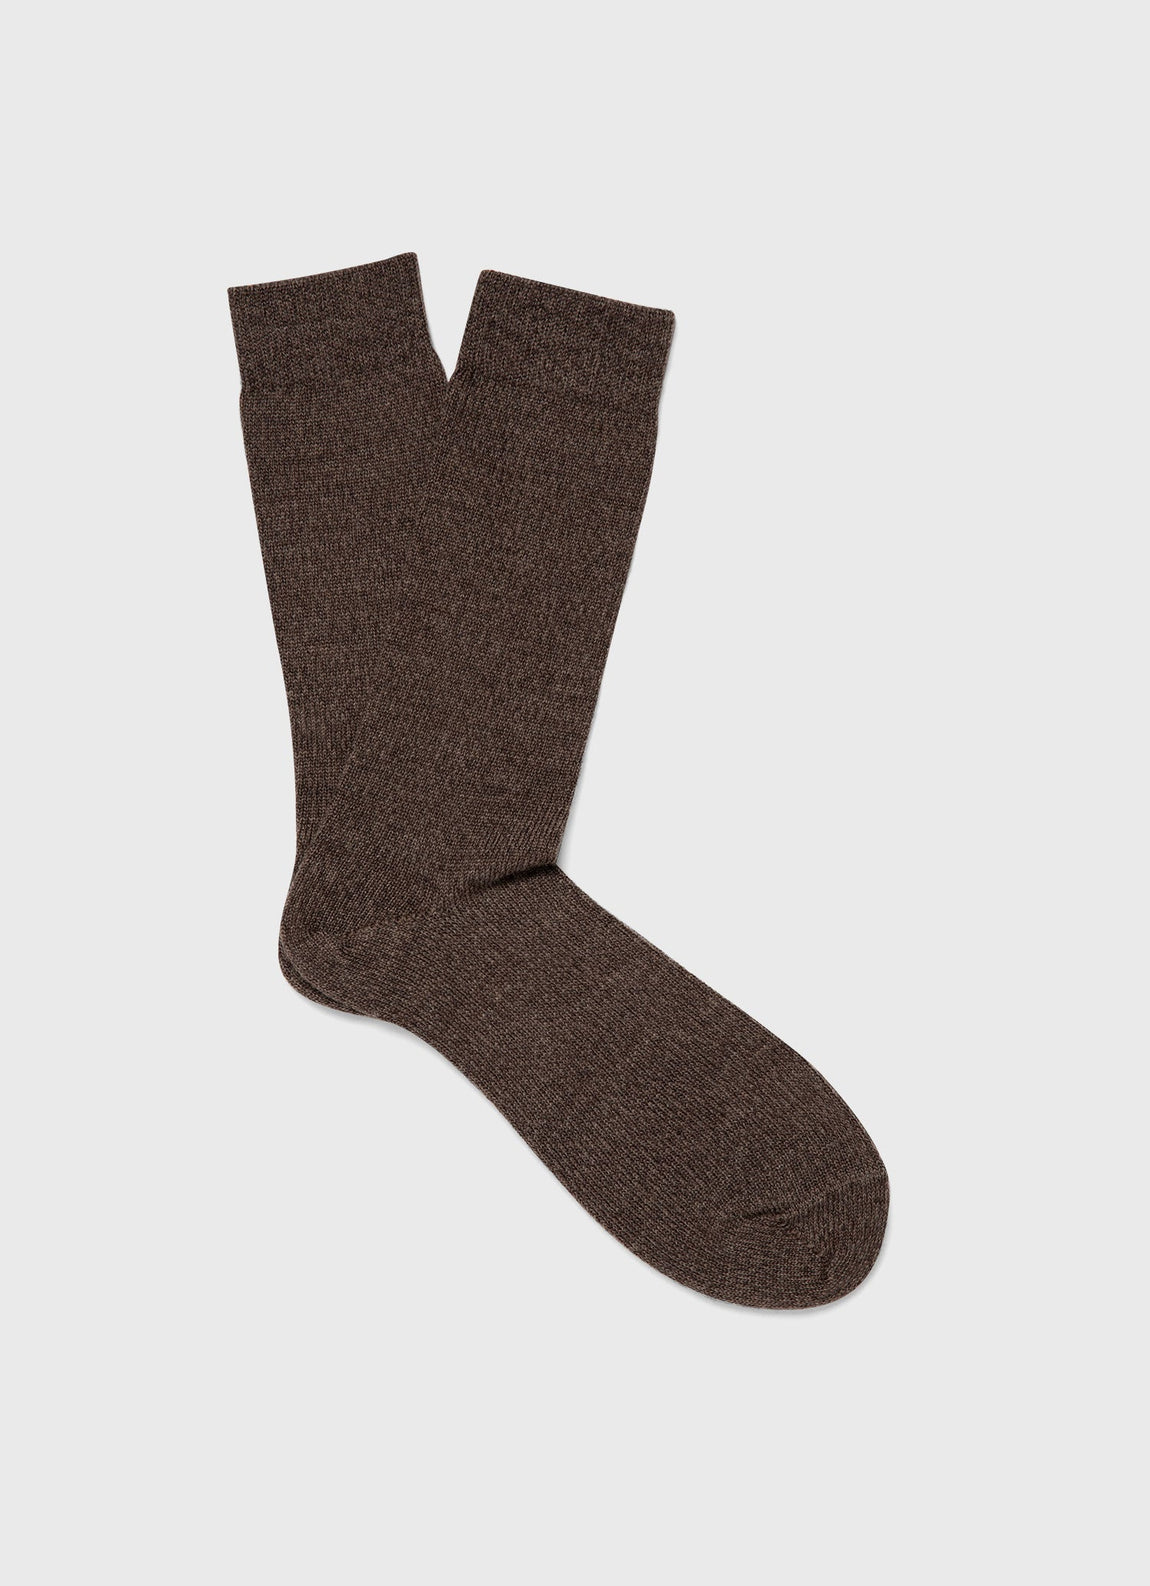 Men's Merino Wool Socks in Cedar Twist